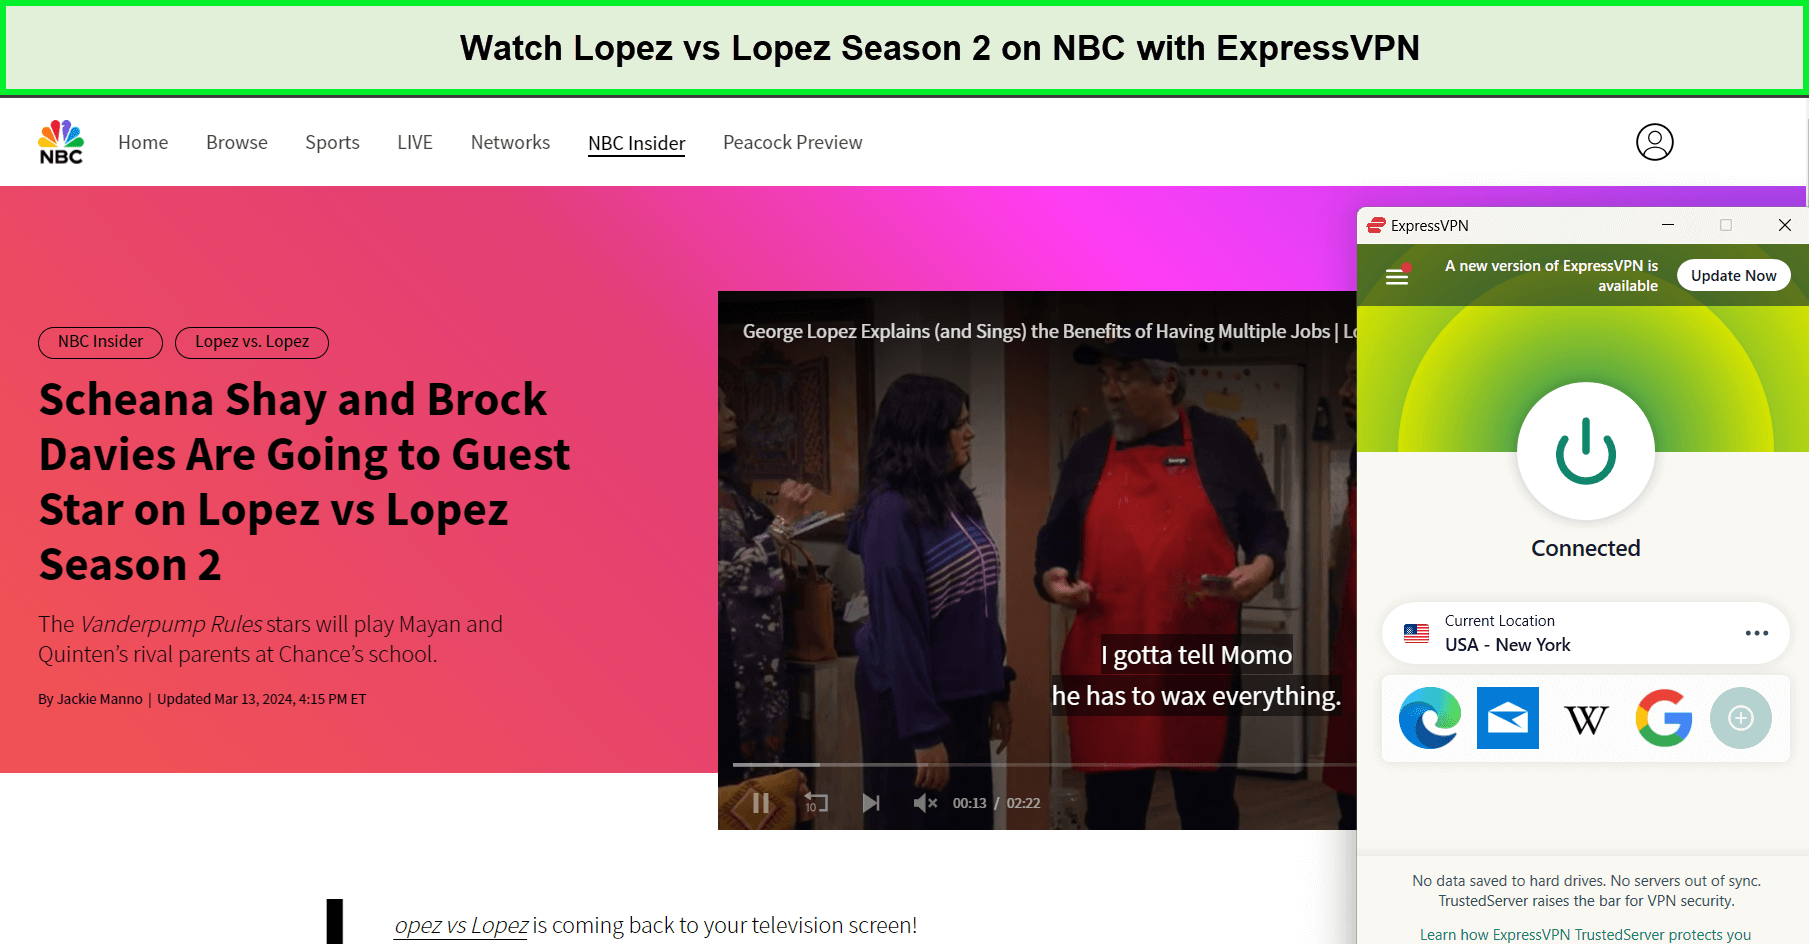 Watch-Lopez-vs-Lopez-Season-2-in-UAE-on-NBC